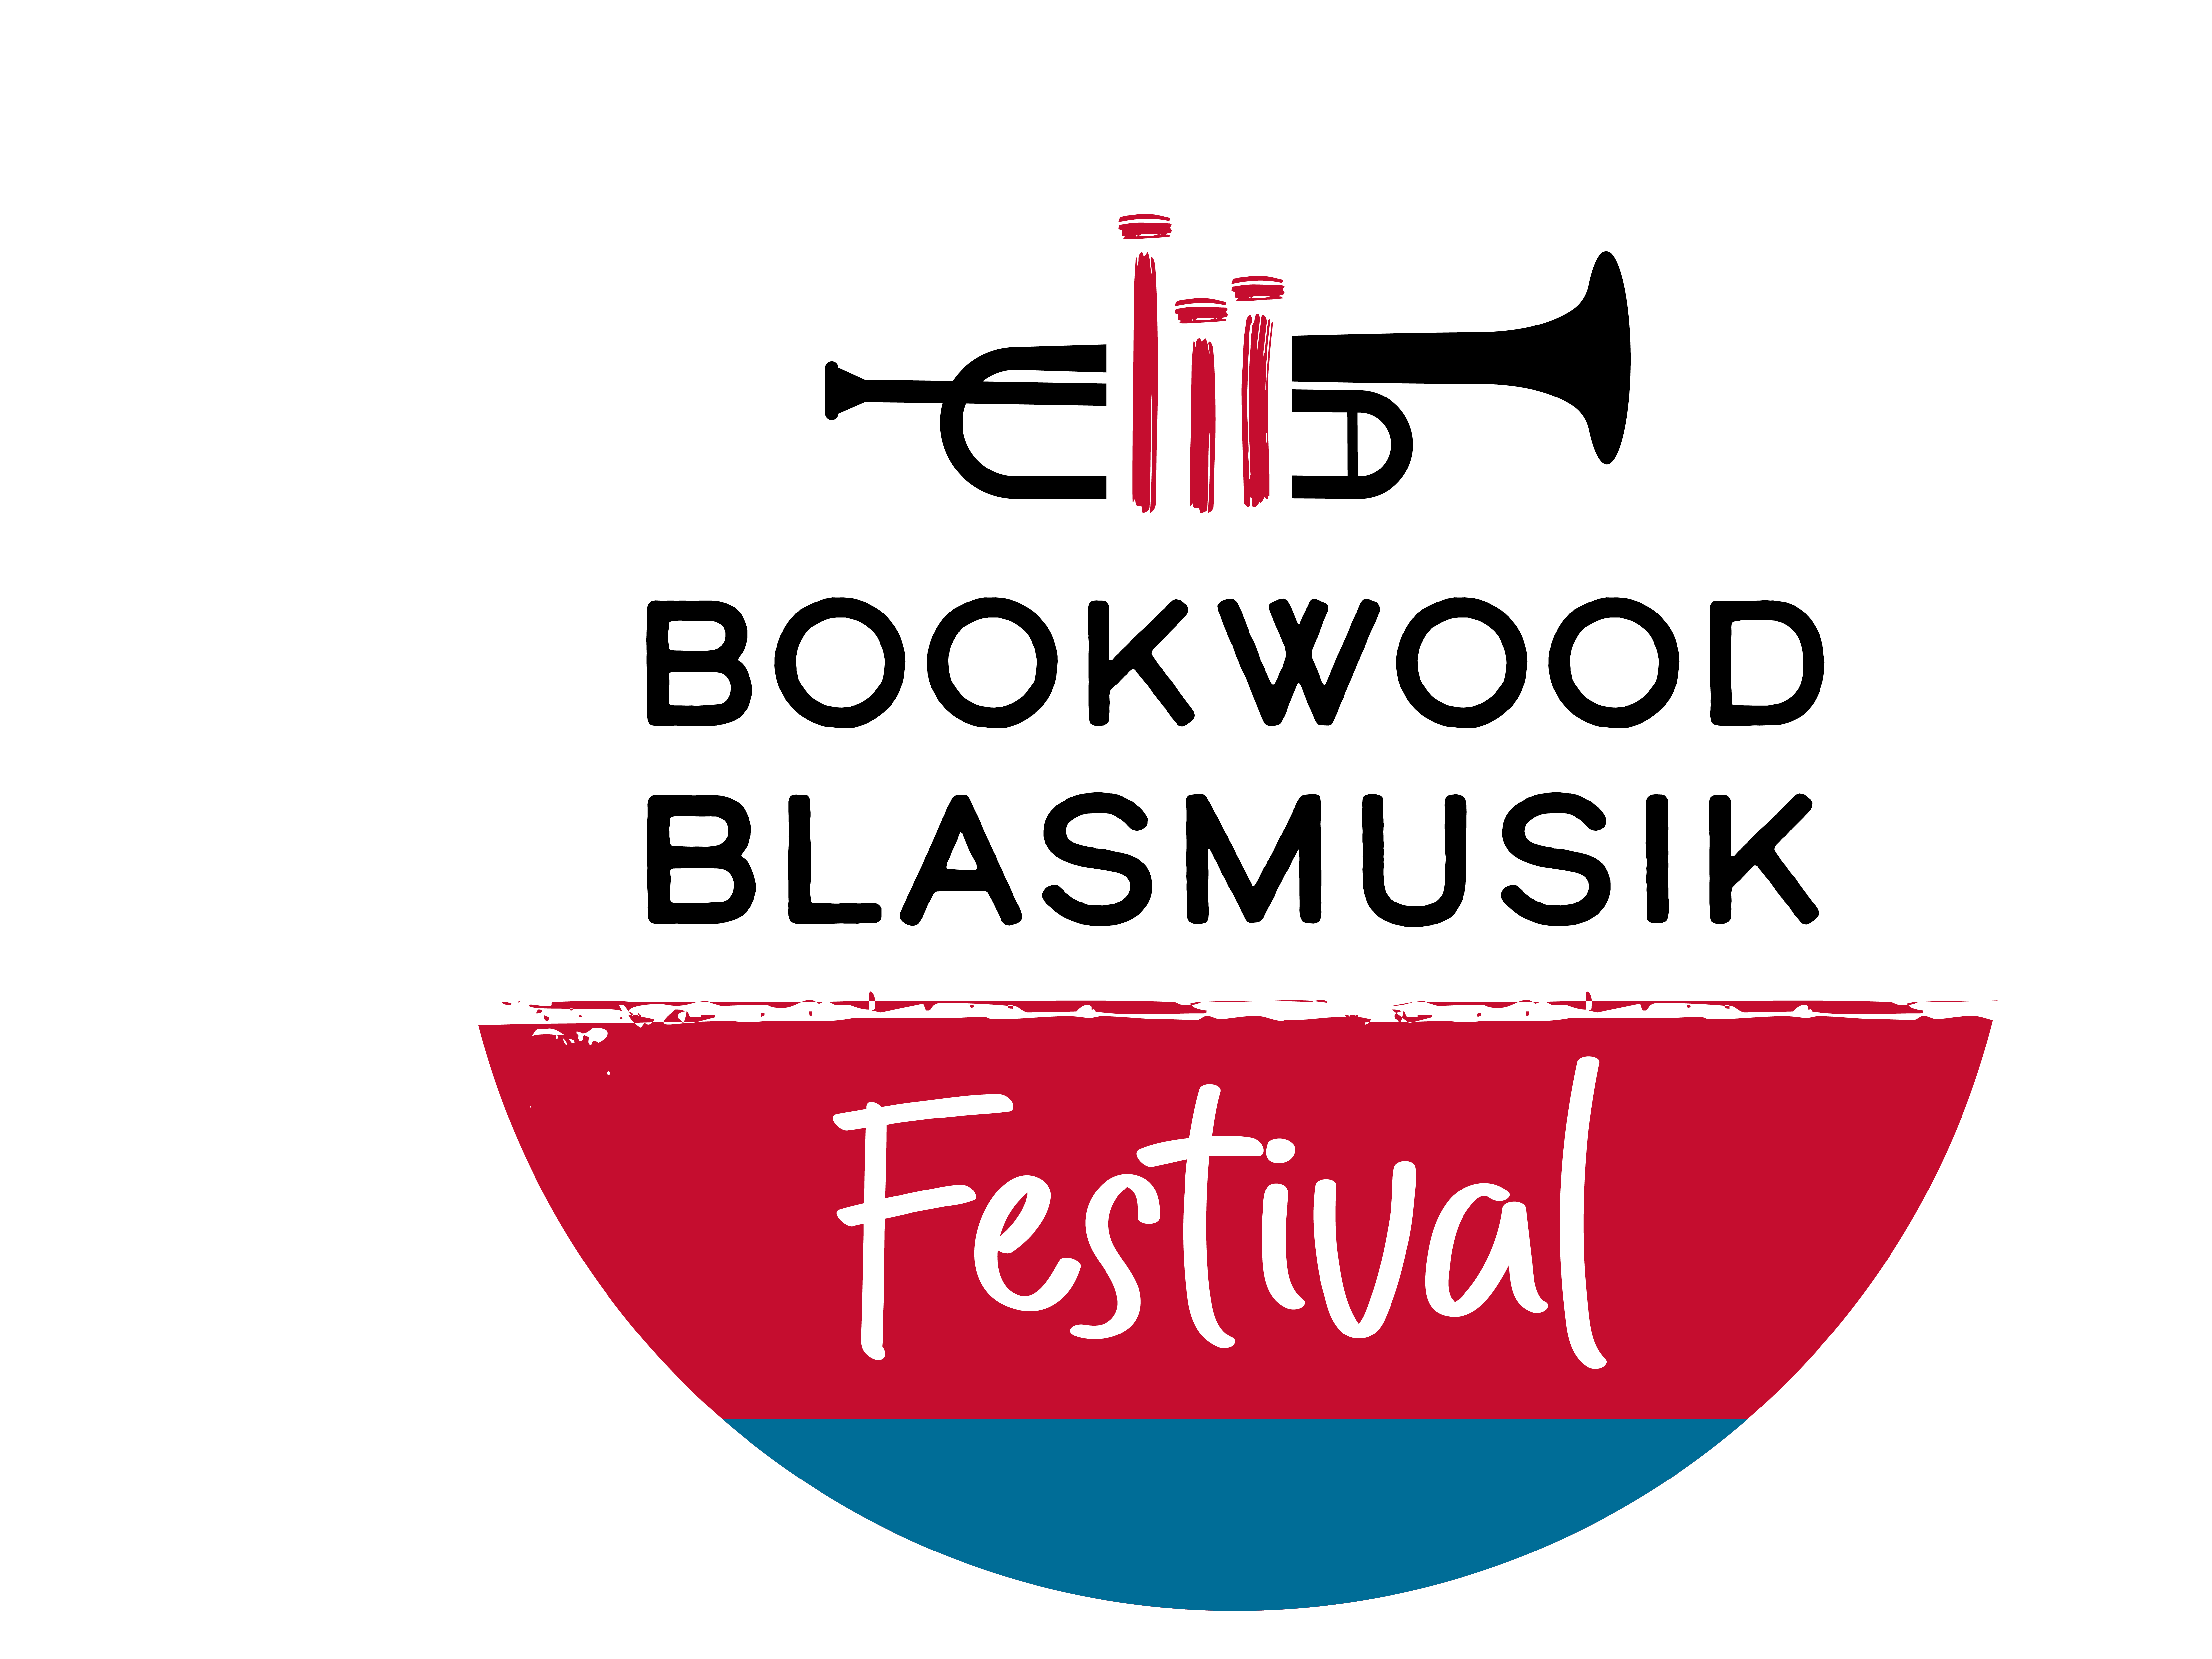 (c) Bookwood-blasmusik.de